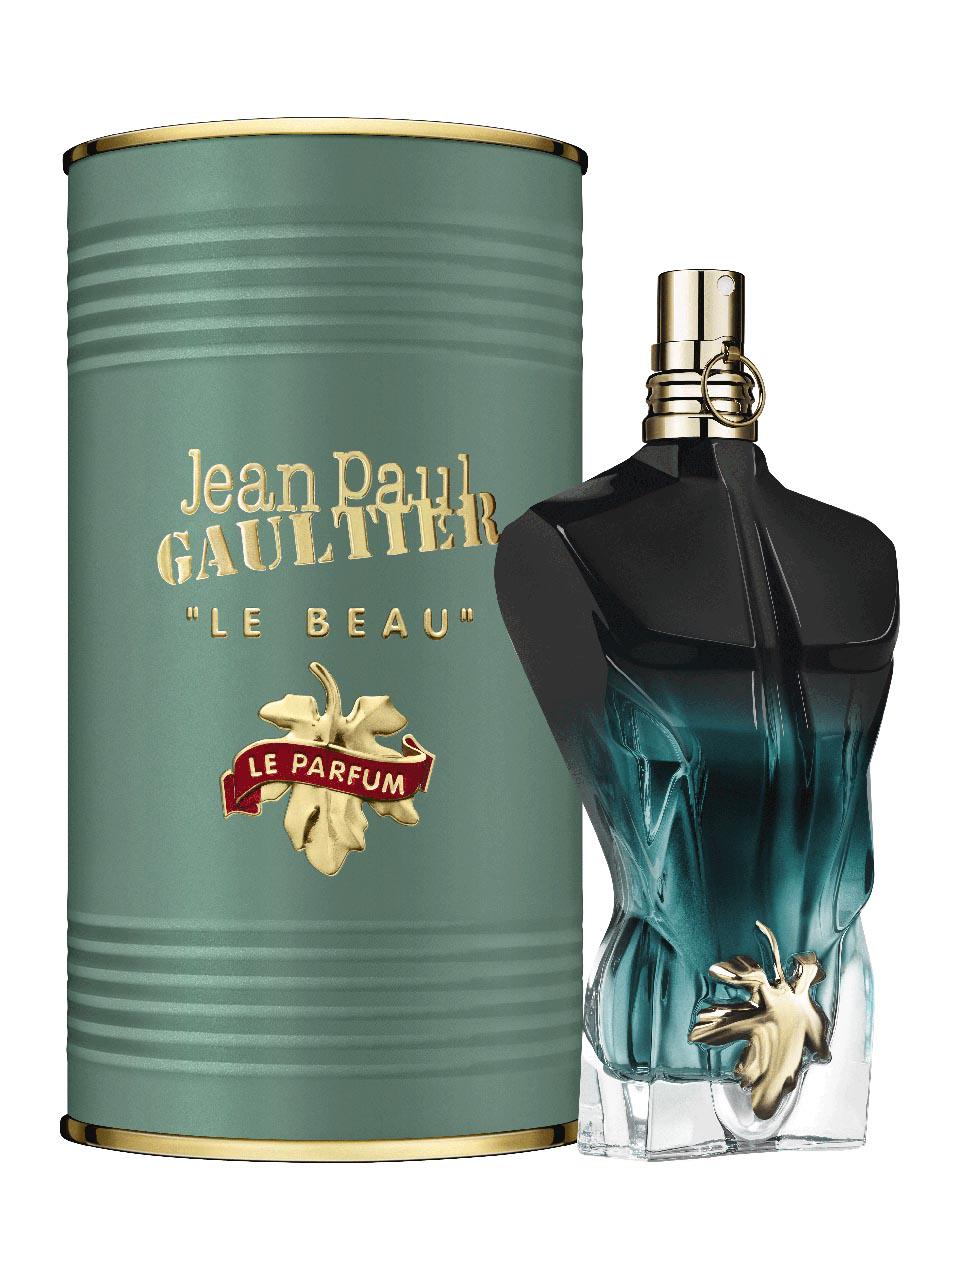 Jean Paul Gaultier Le Beau Eau de Parfum Intense 75 ml